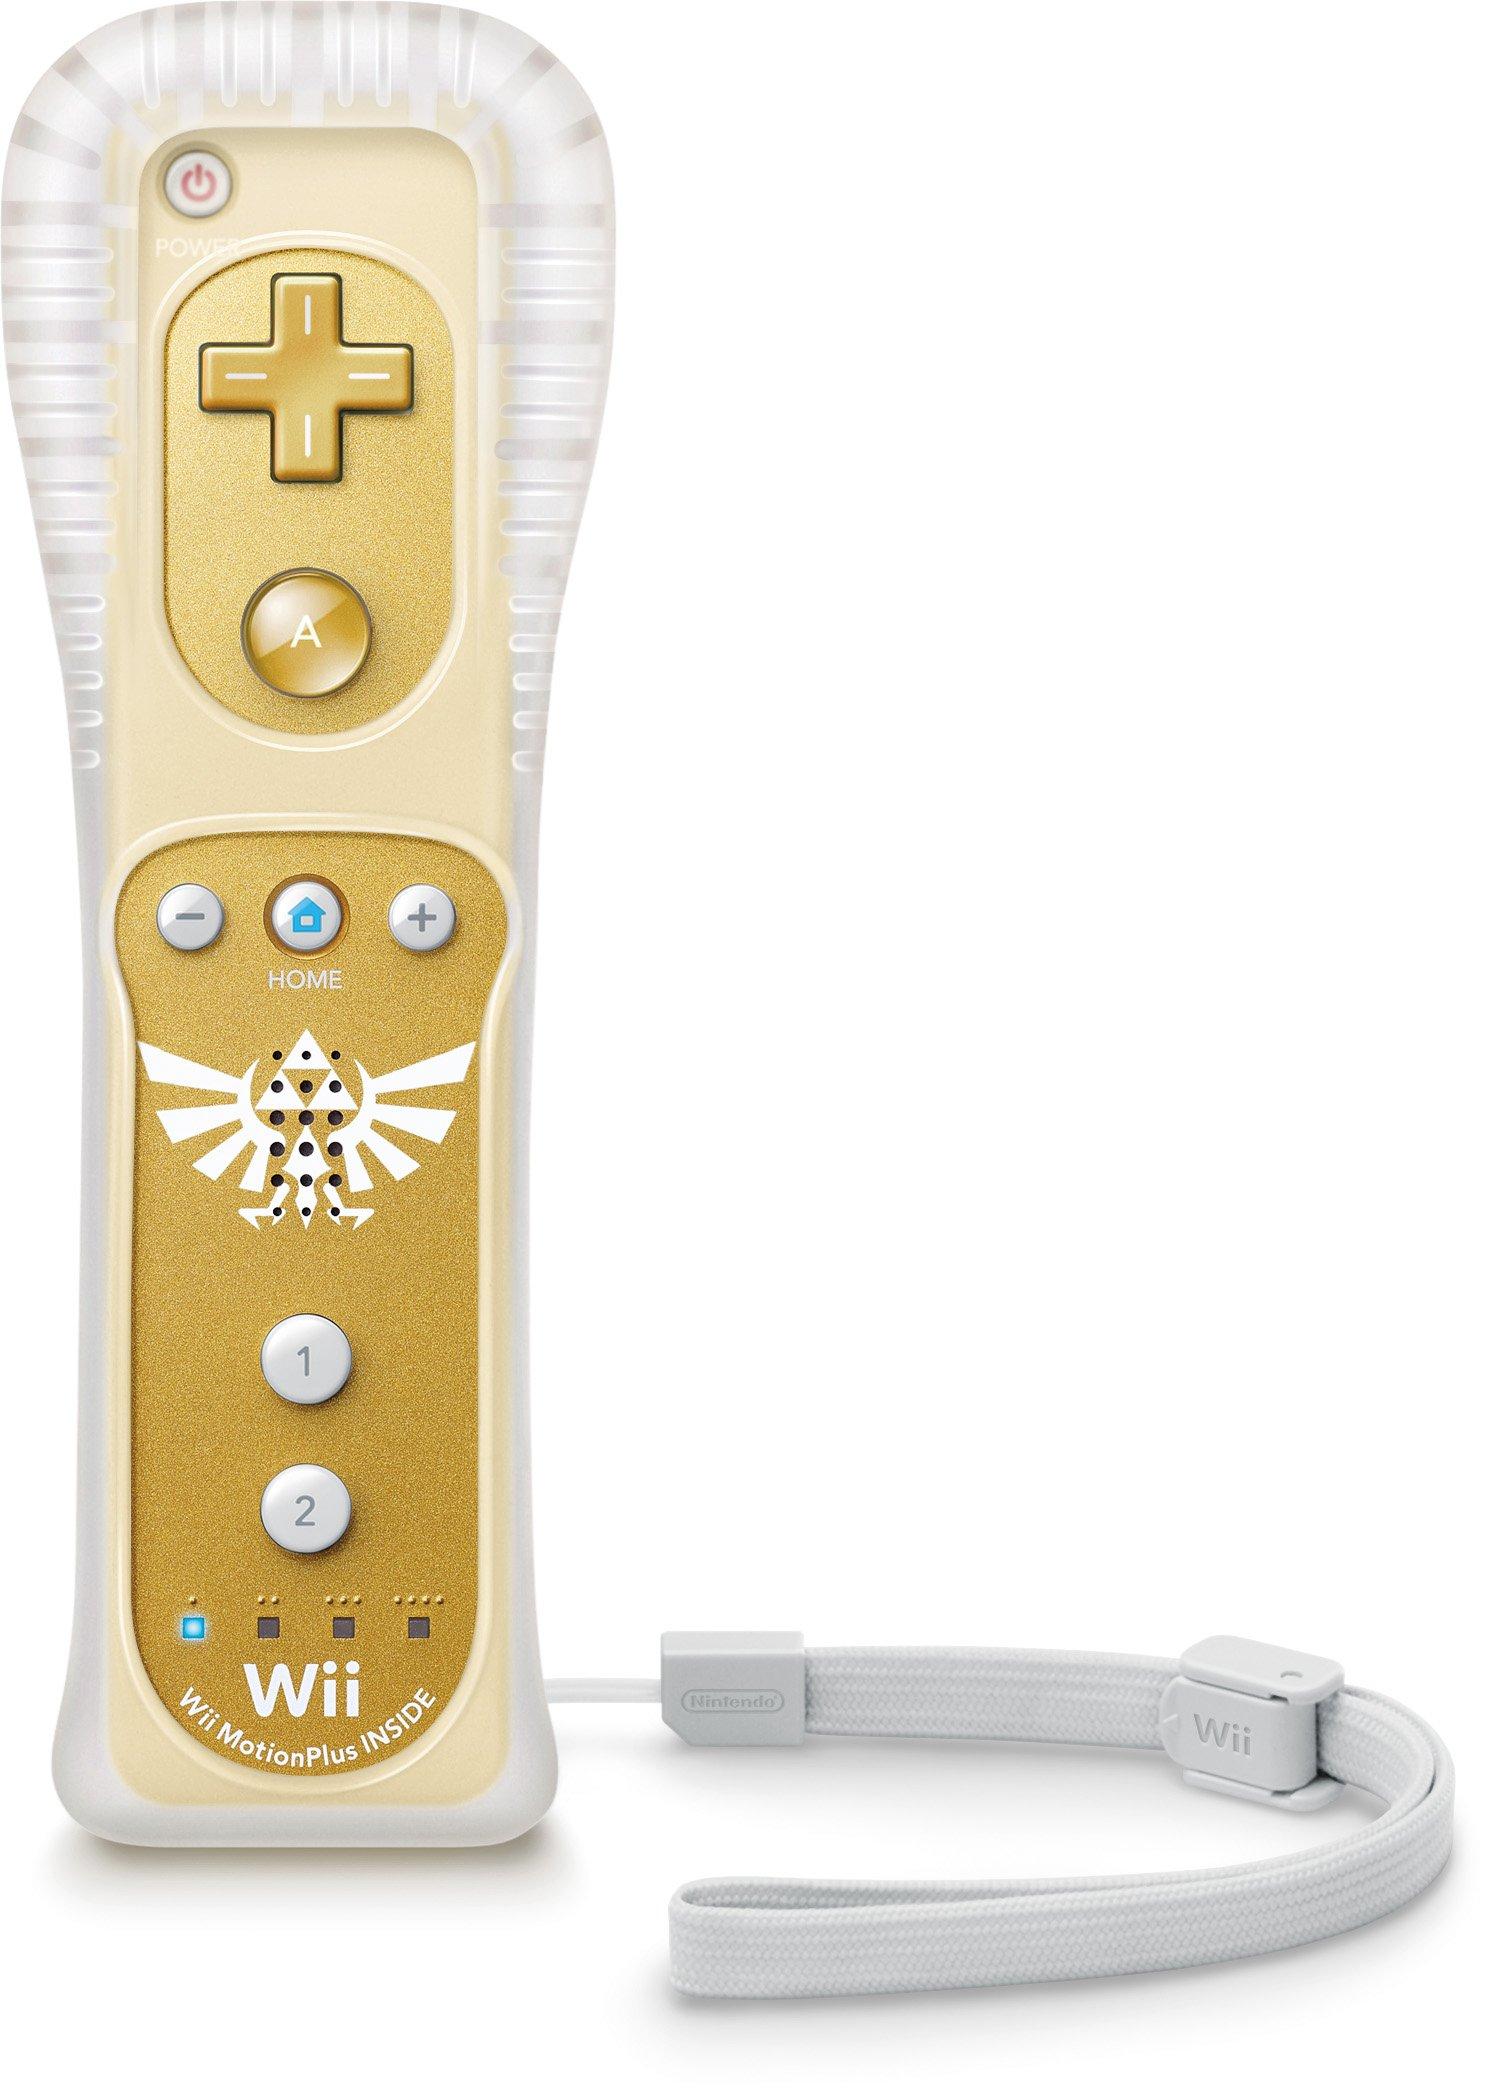 Used Nintendo Wii Remote Motion Plus - White